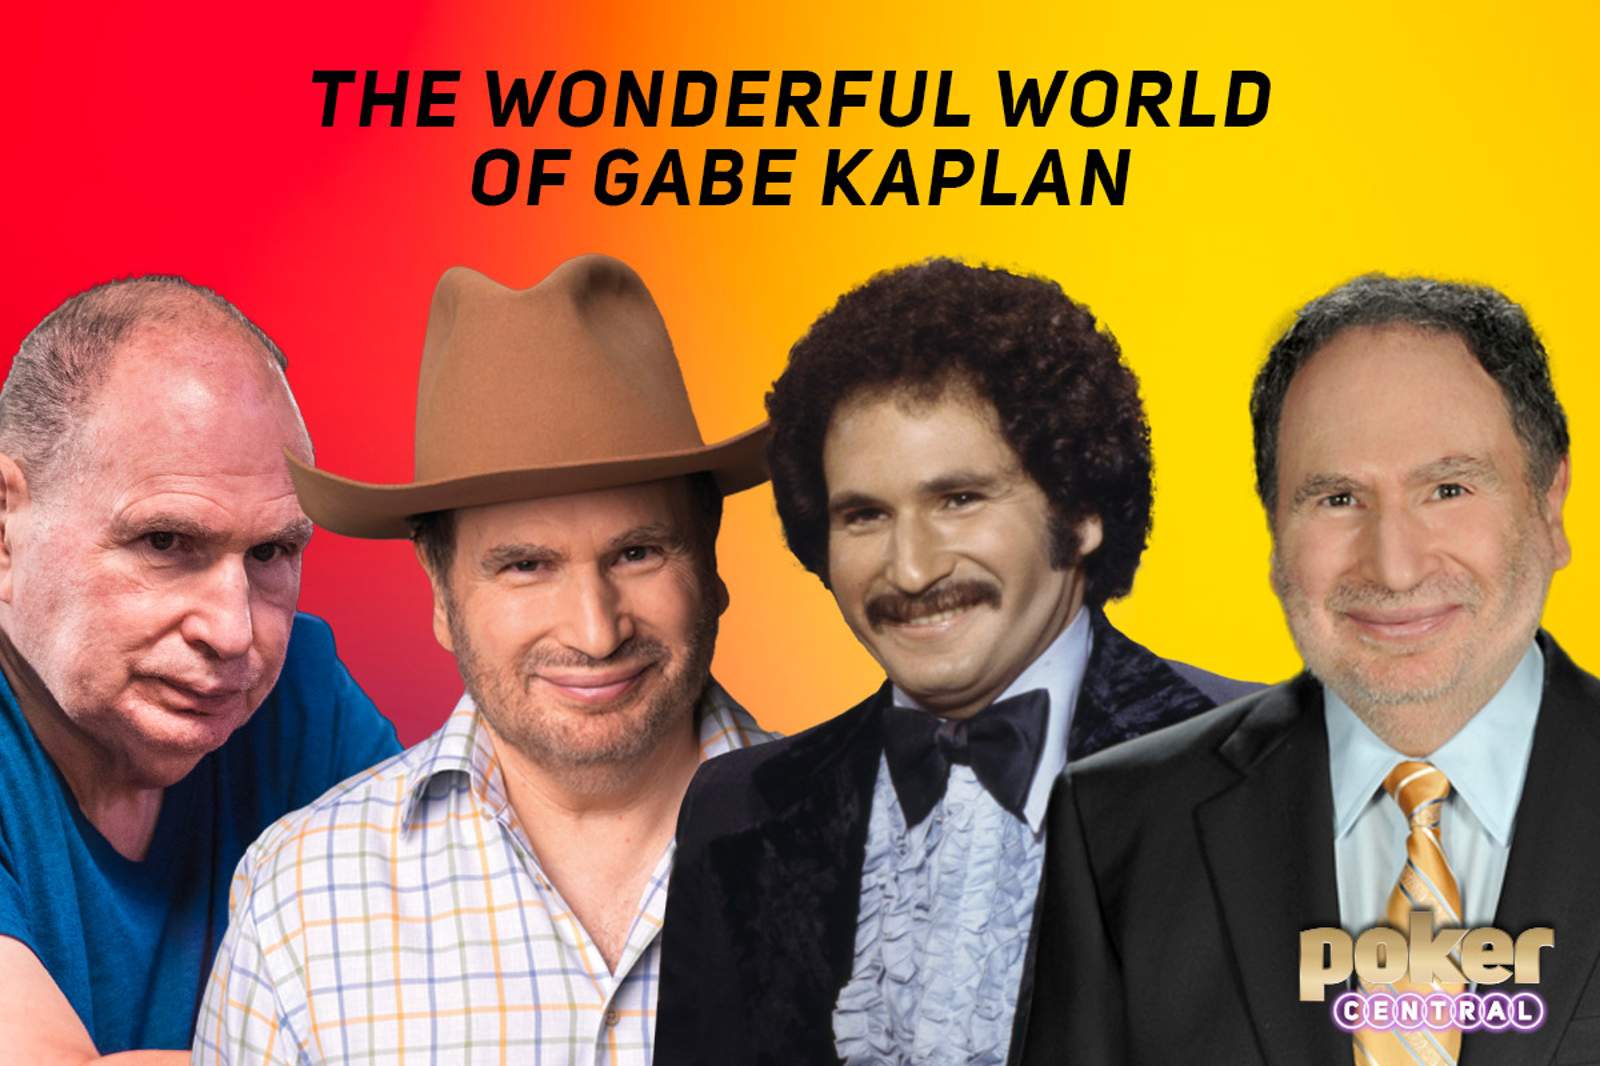 Wonderful World of Gabe Kaplan